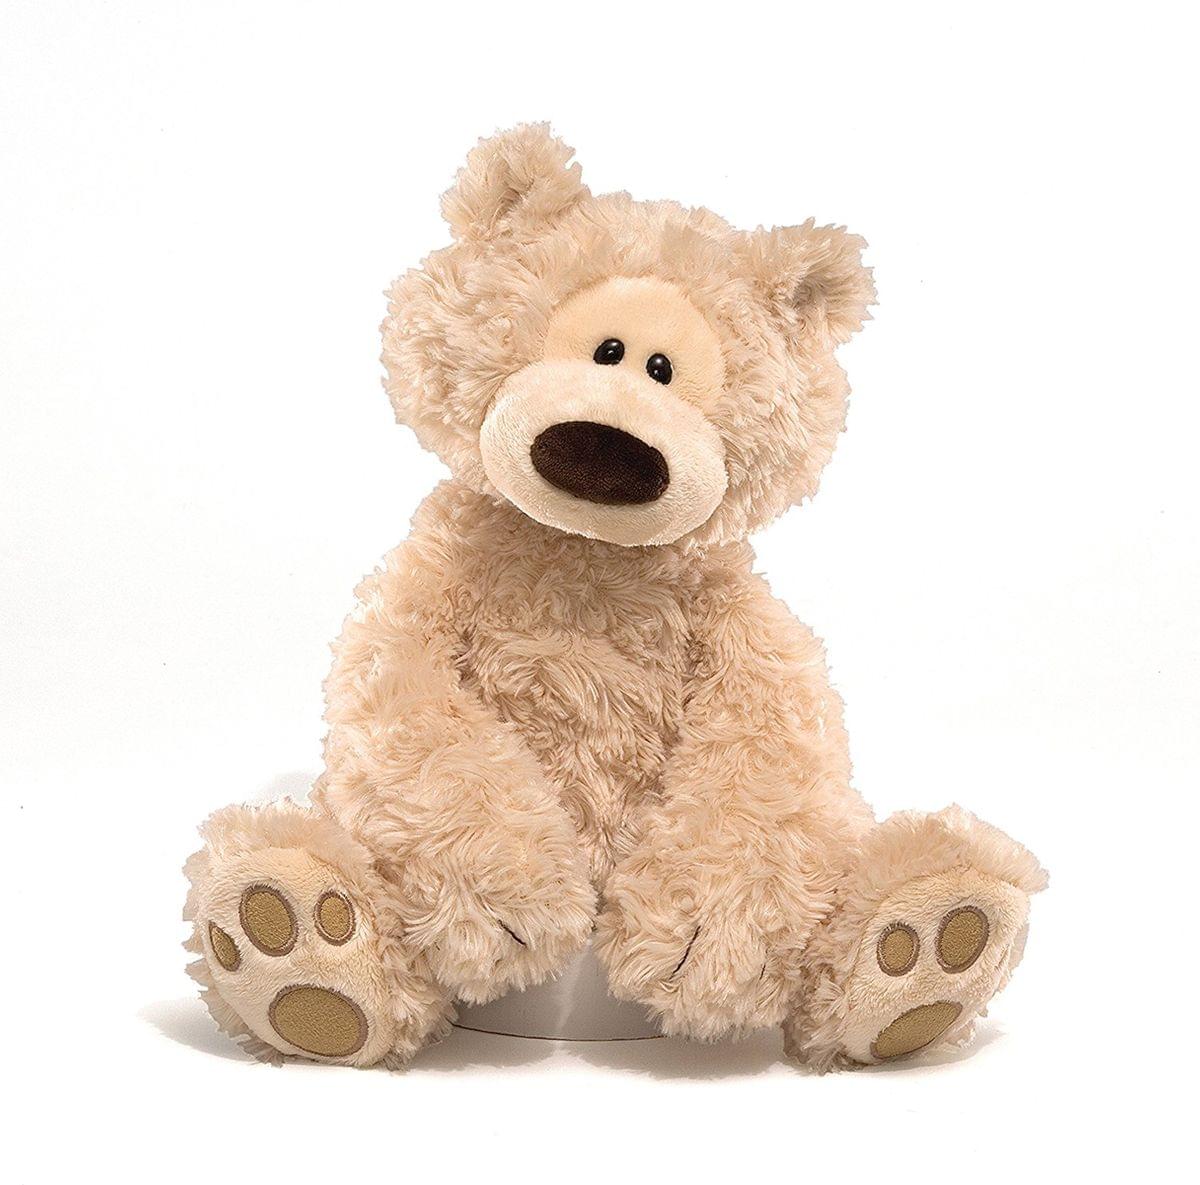 Philbin Teddy Bear 12-Inch Plush Toy | Beige